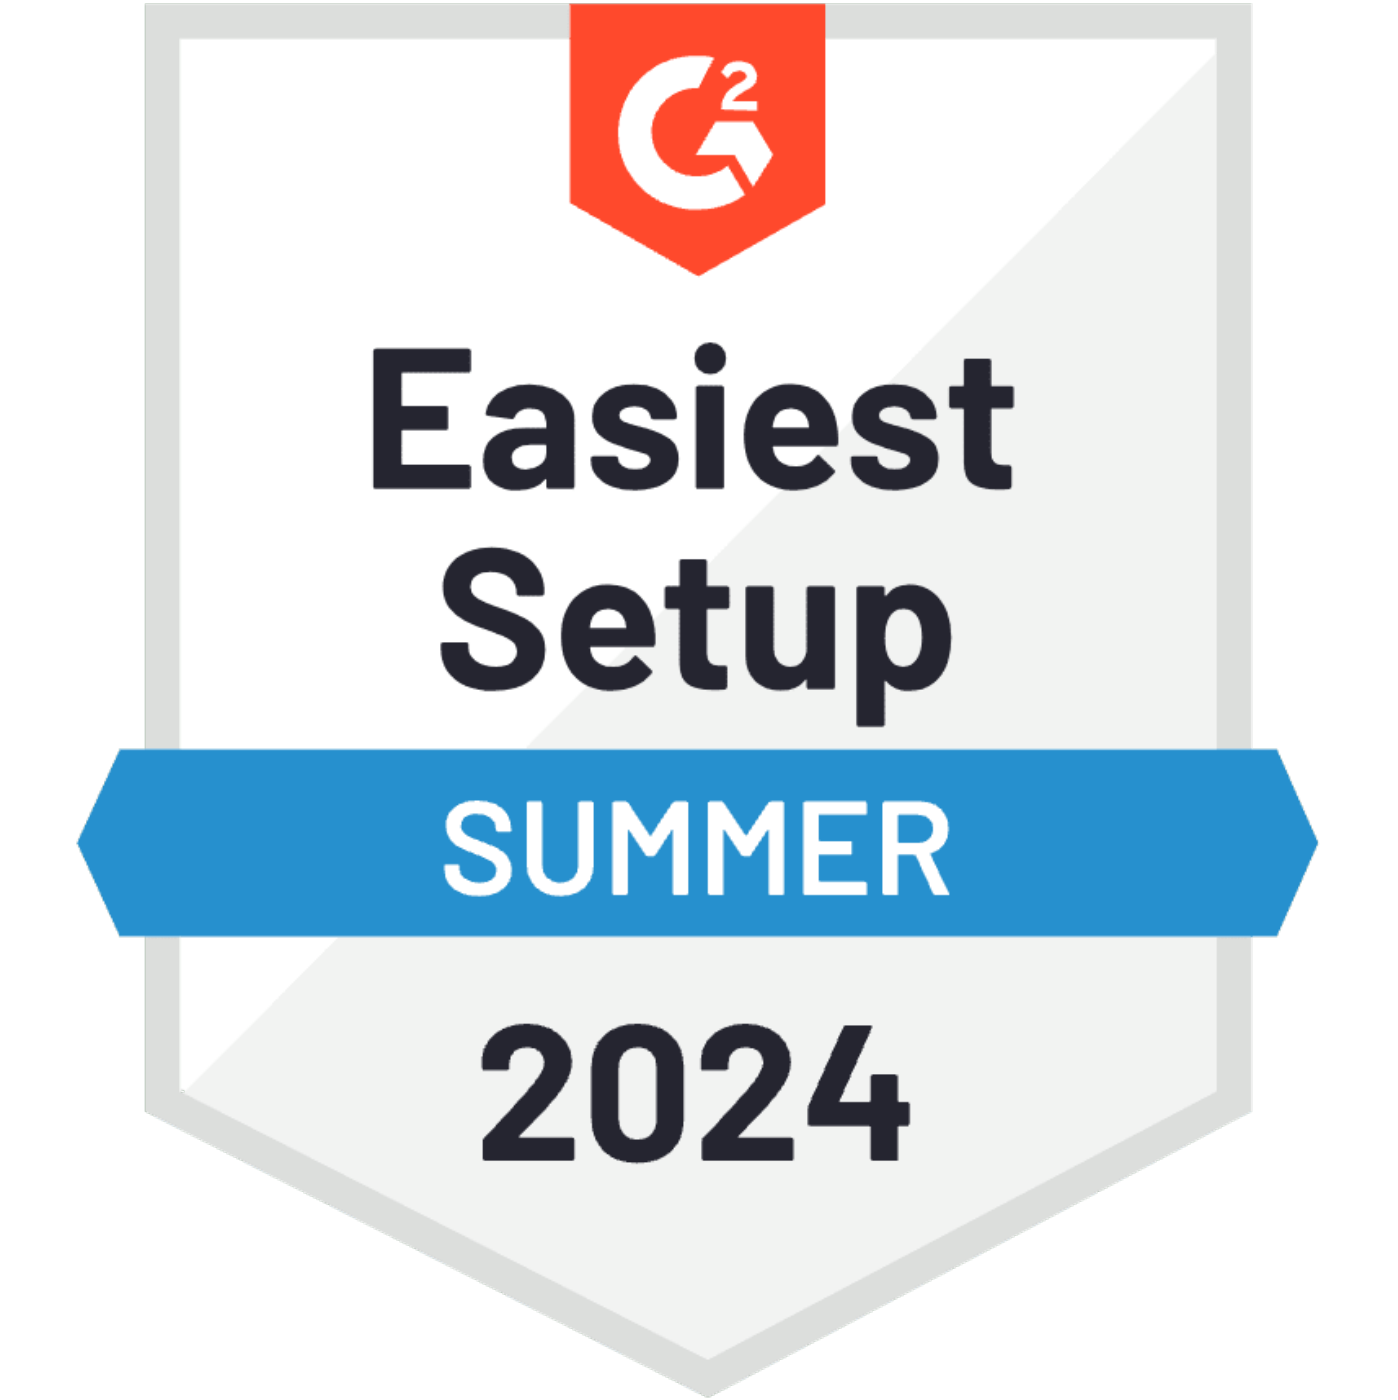 G2 Easiest Setup Summer 2024